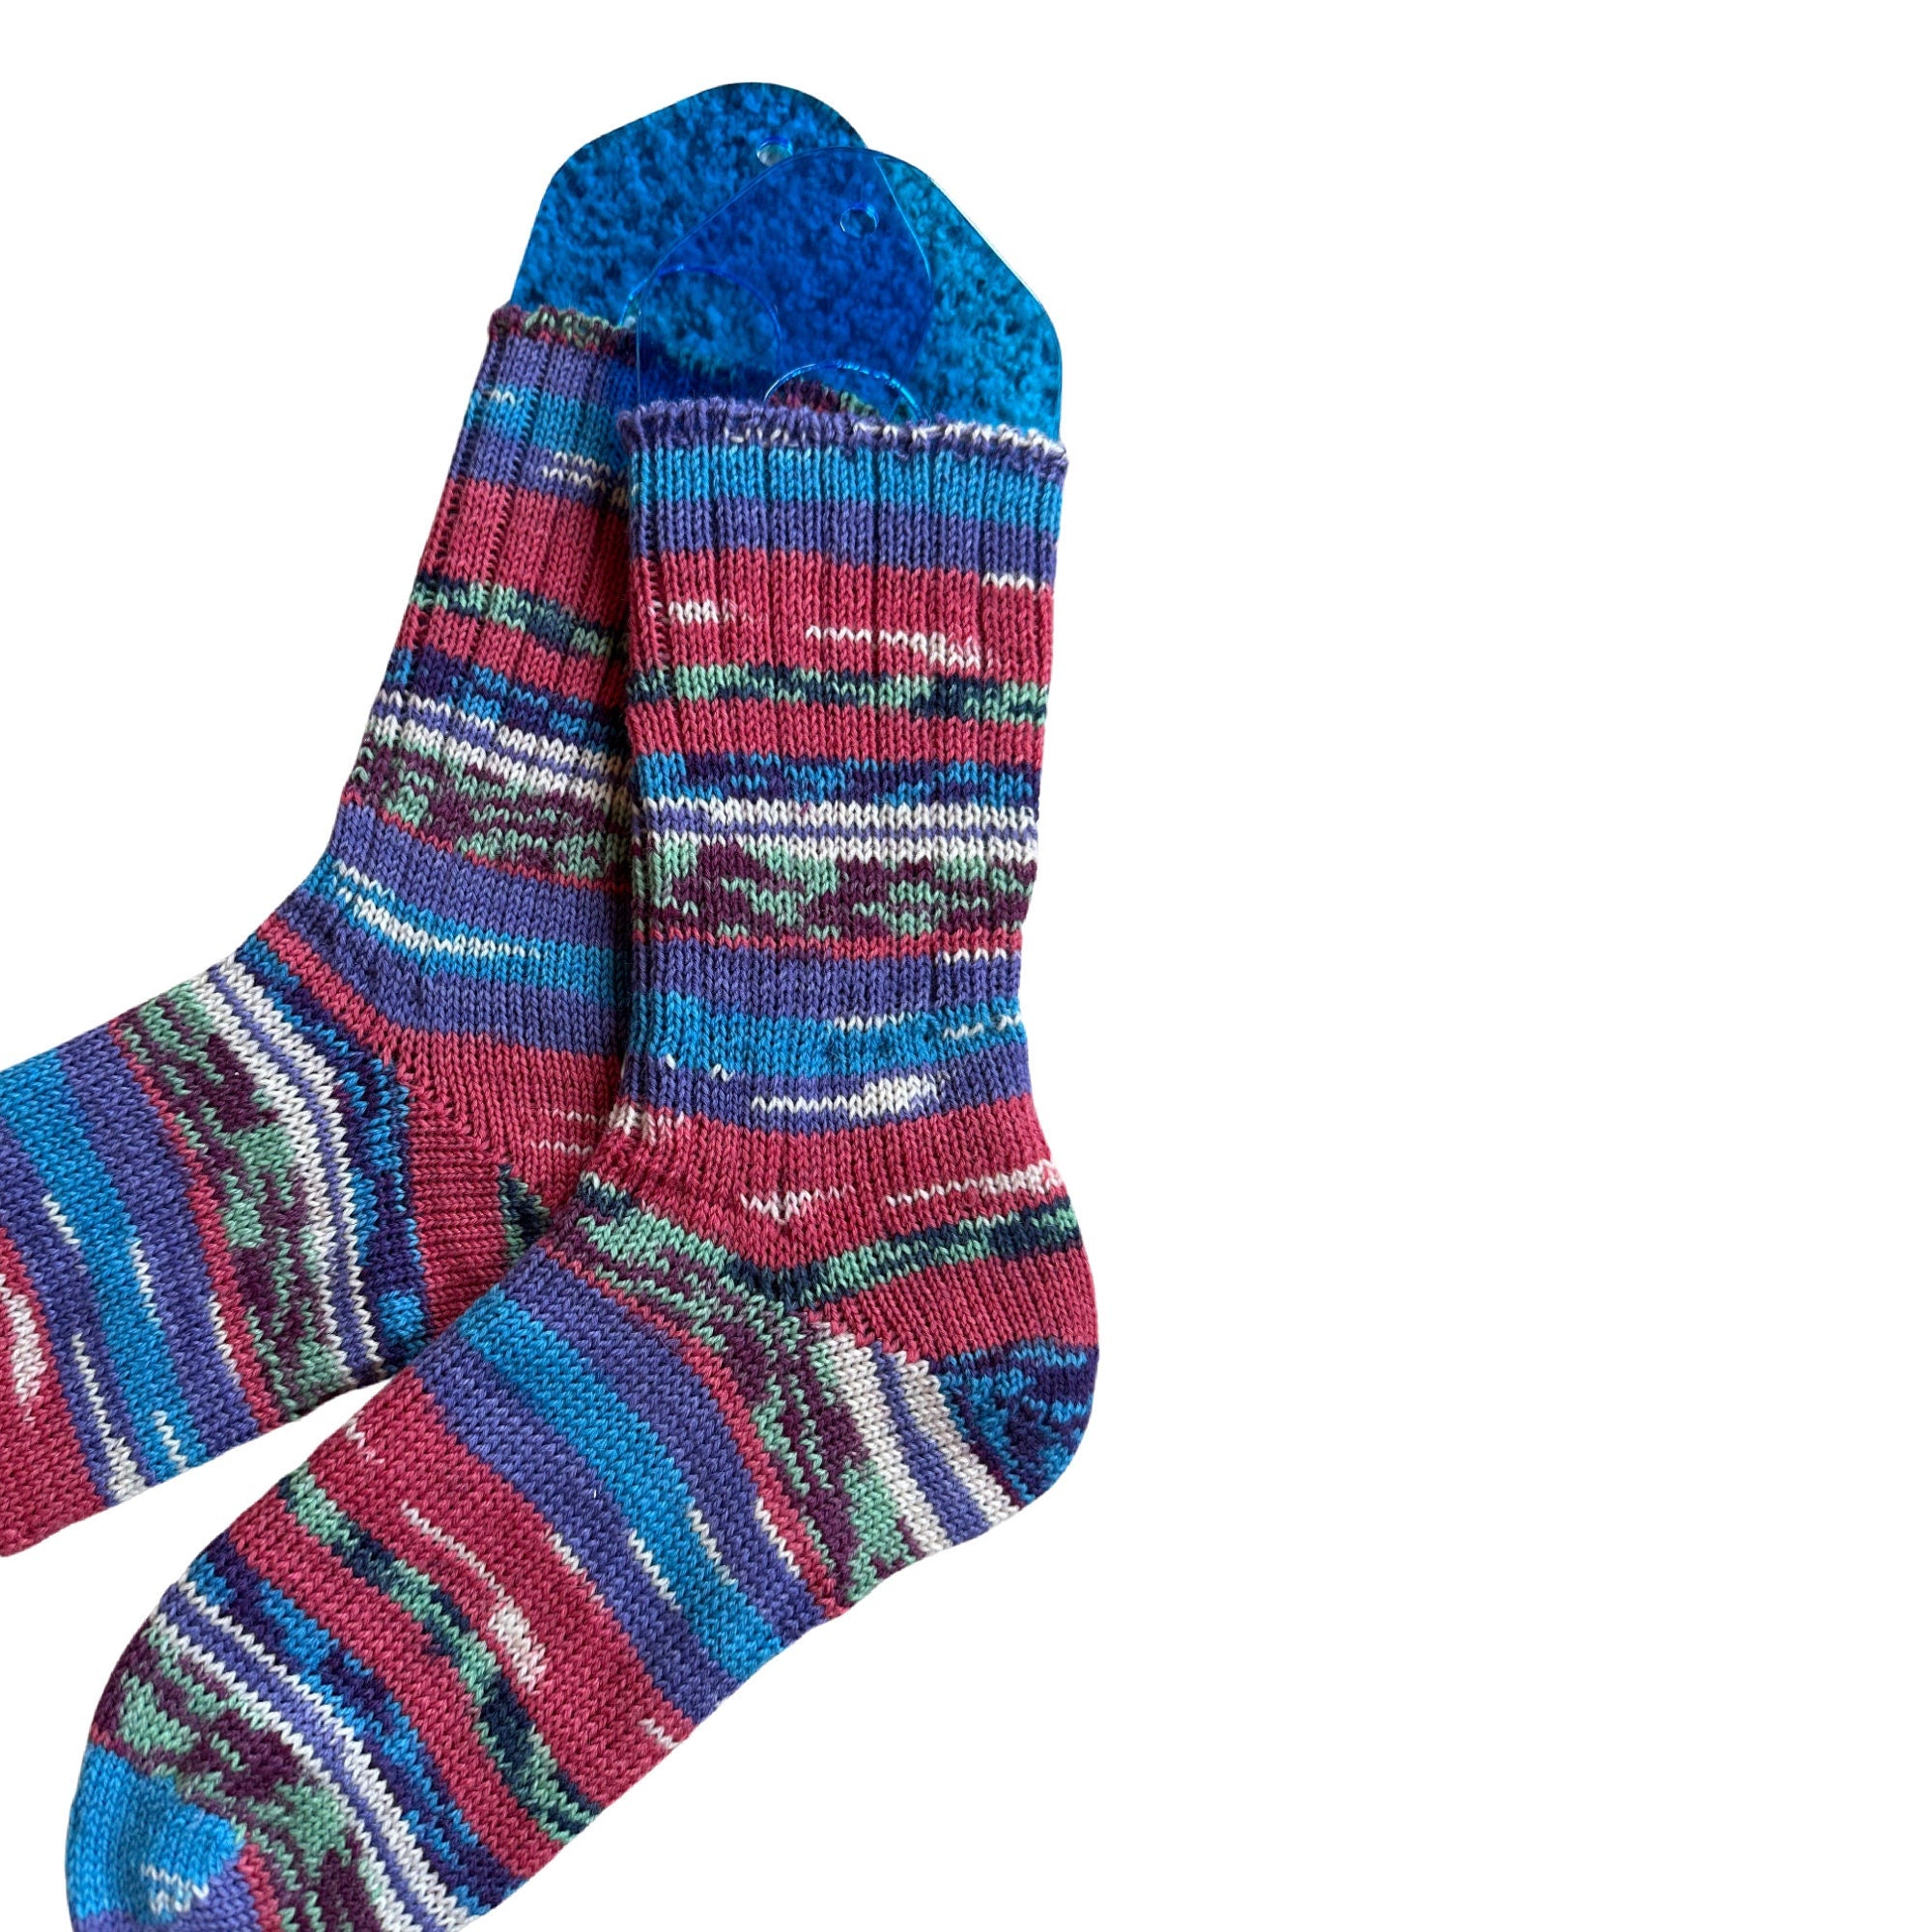 Southwestern Style Wool Socks,Handknit Gift Socks Women, Wool Socks Women, Thick Wool Socks, Colorful Wool Socks, Winter Socks, Handknit